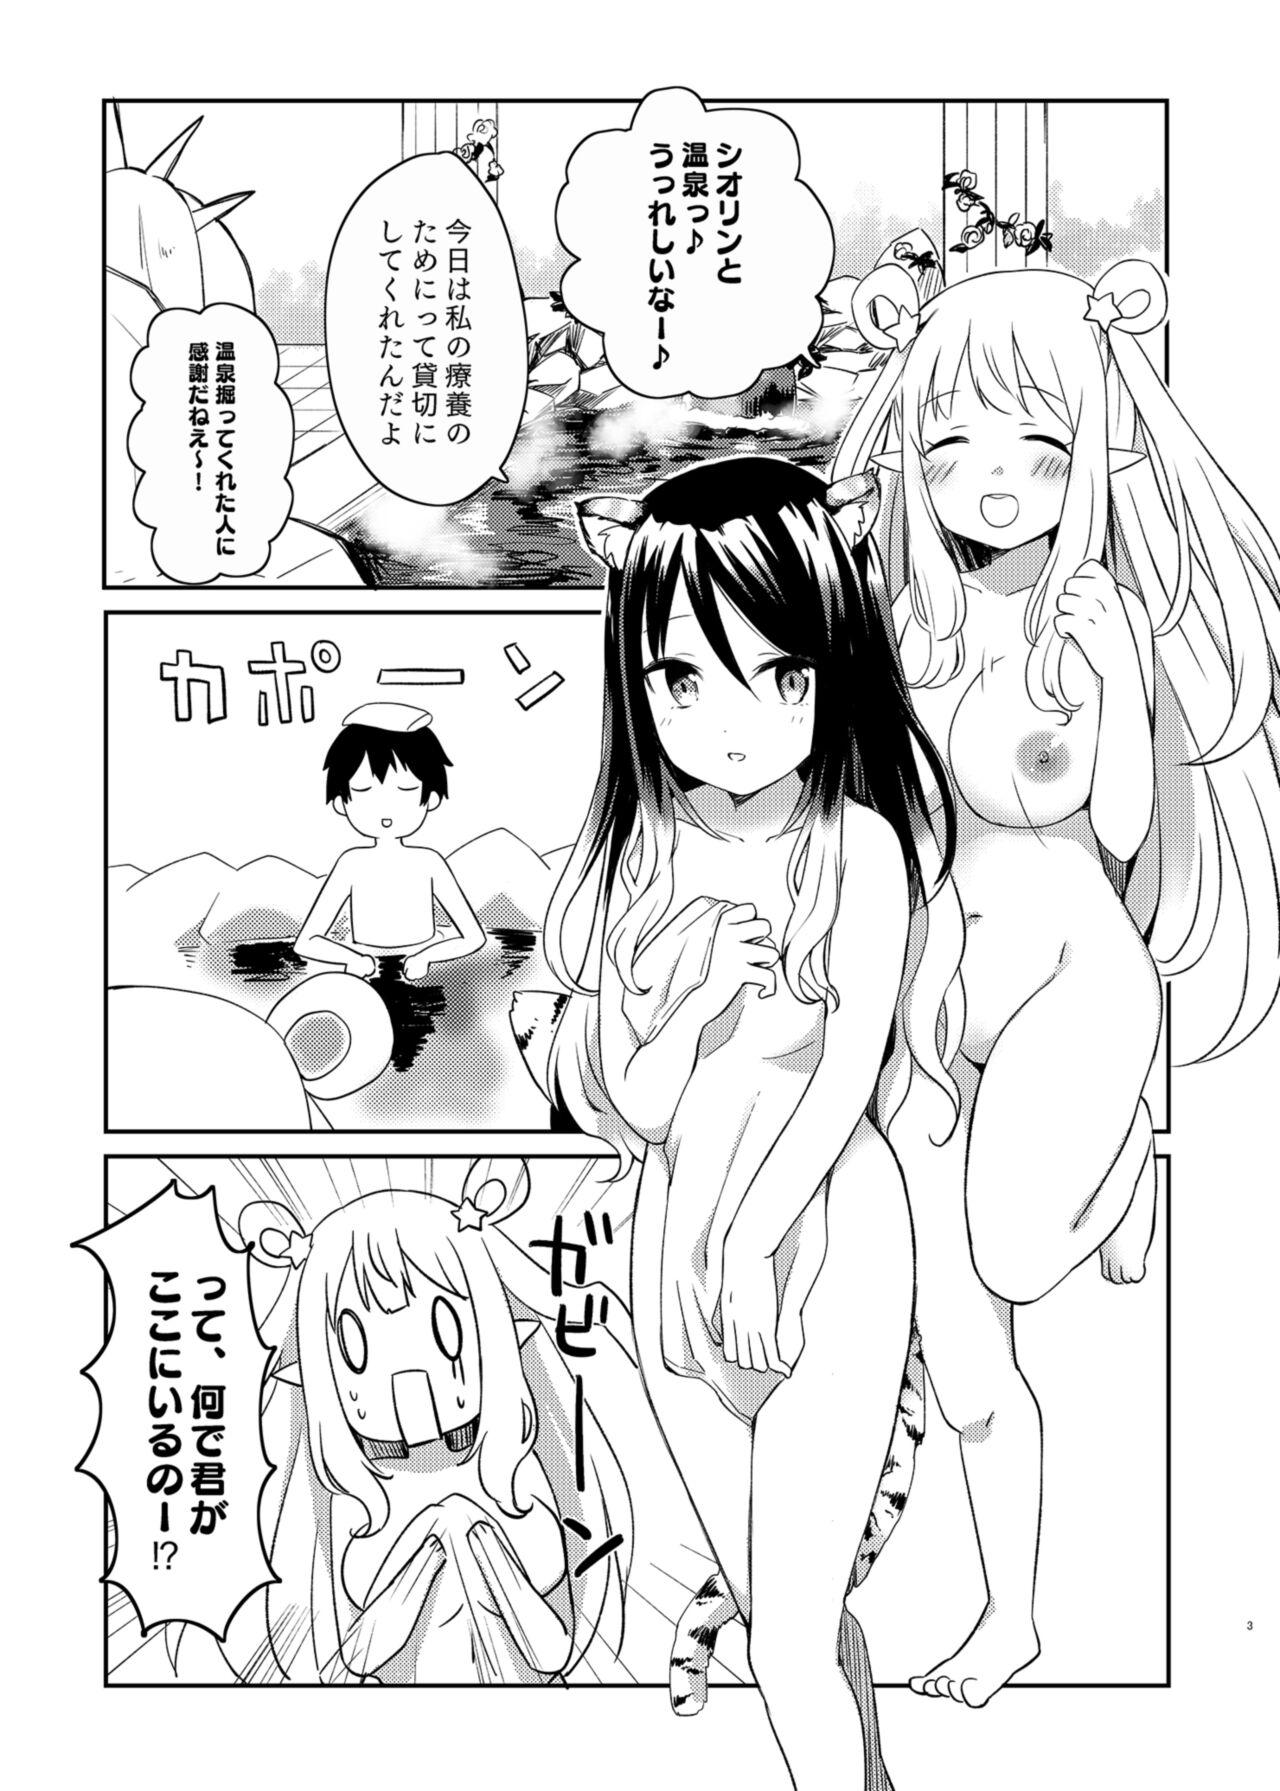 Babes Hatsune to Shiori no Yukemuri Daisakusen - Princess connect Gaydudes - Page 3